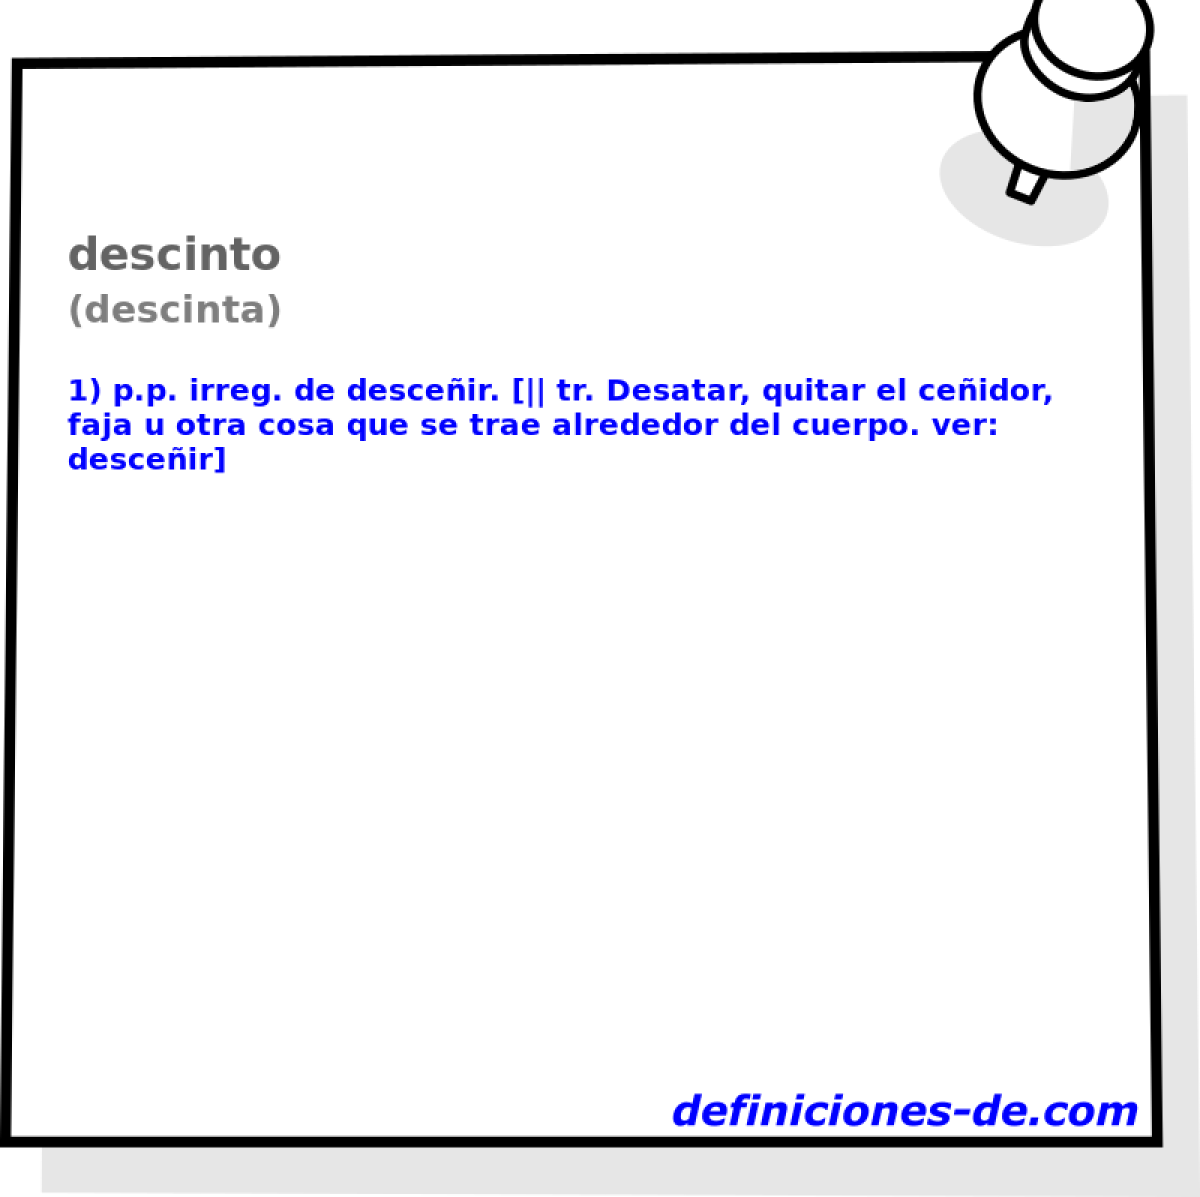 descinto (descinta)